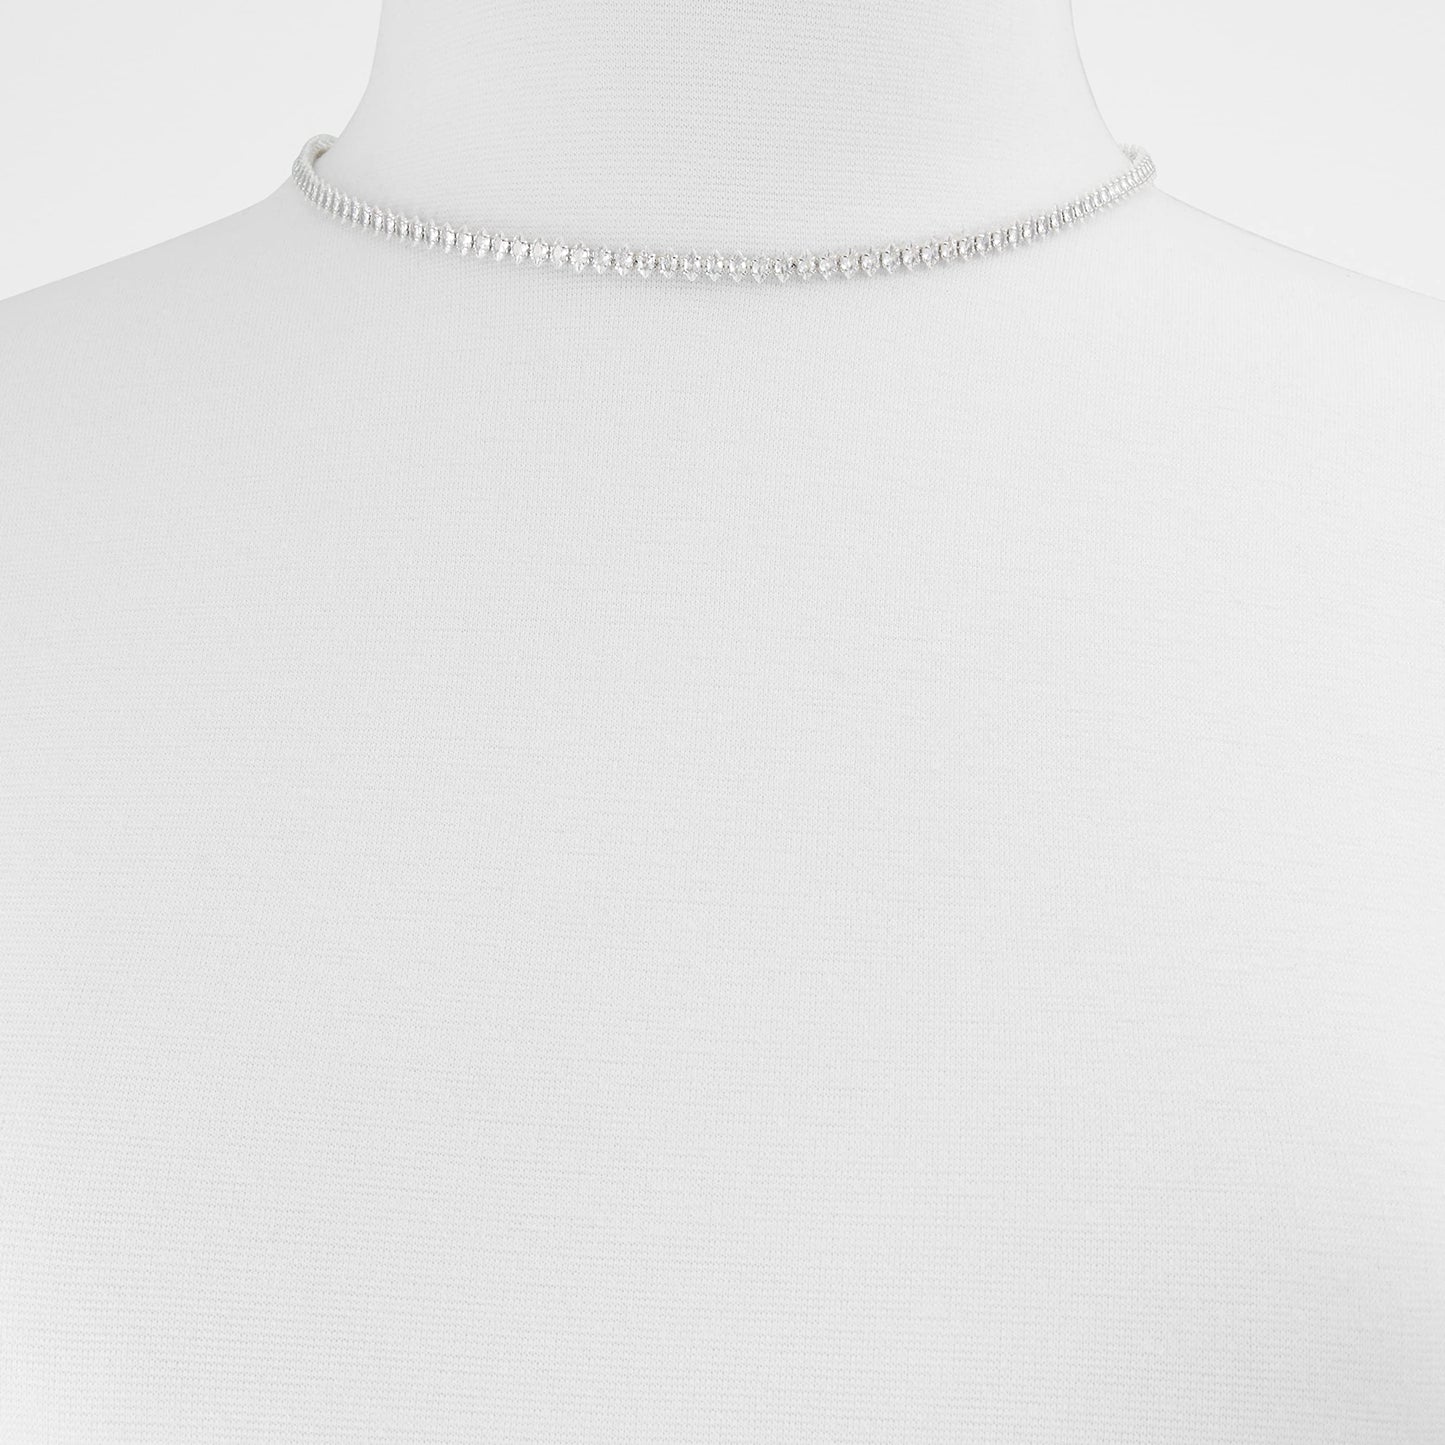 Aldo Women's Gaventariel Chain Necklace, Silver, Standard